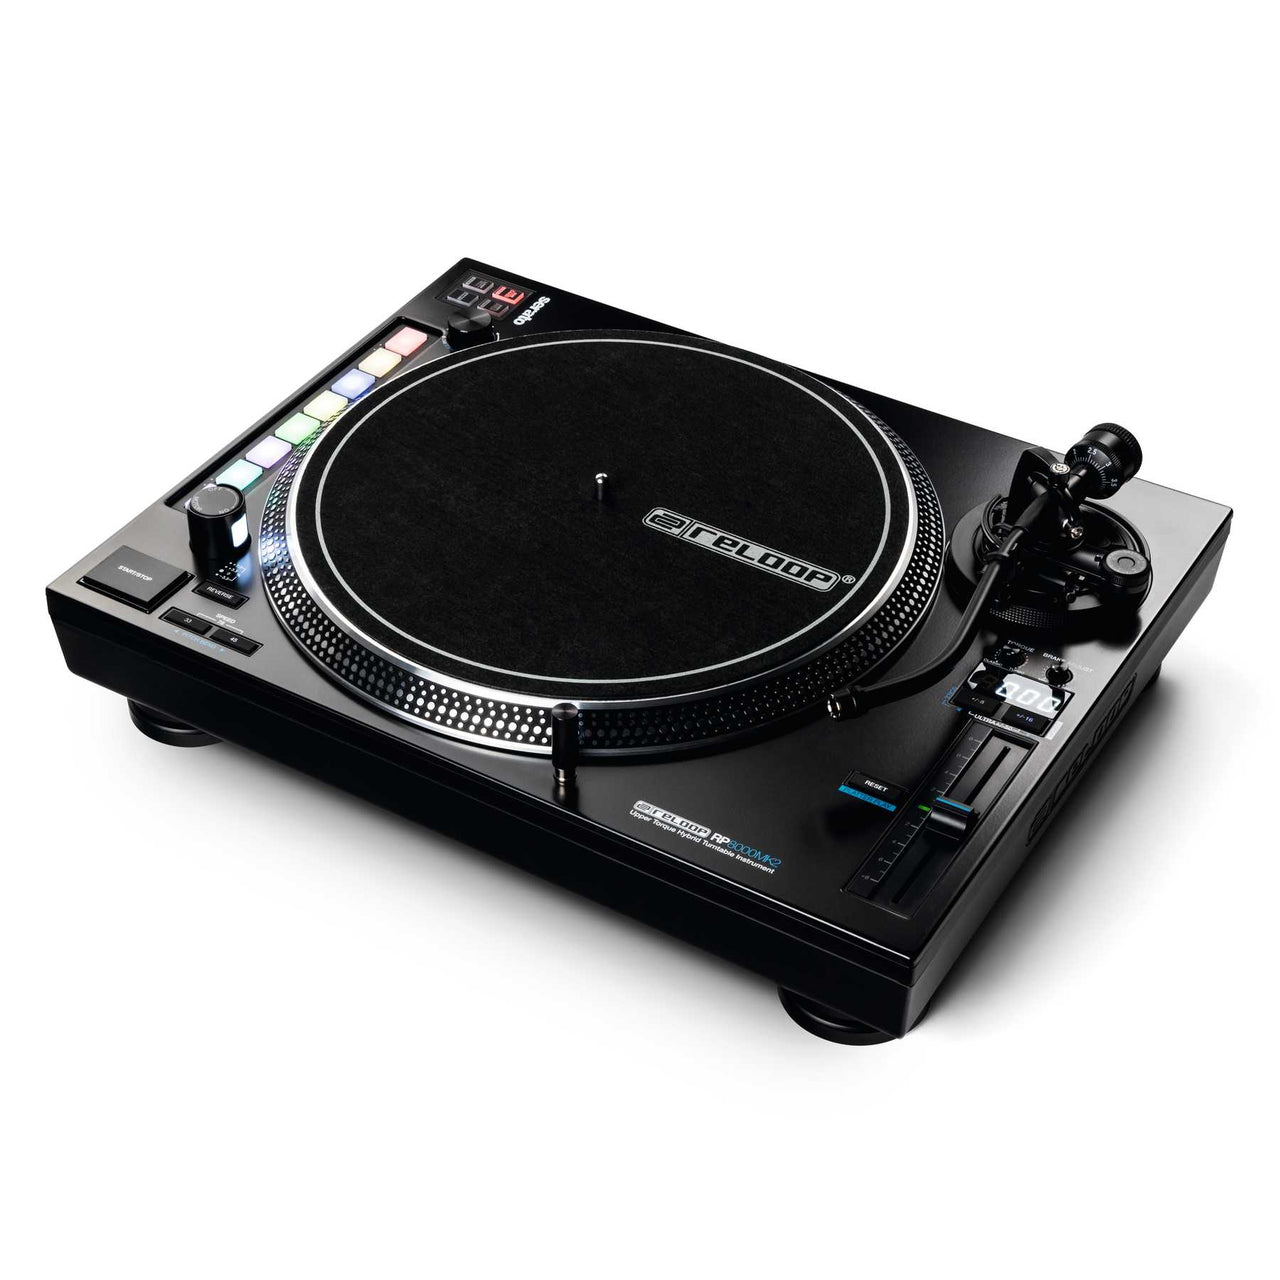 Reloop RP-7000 MK2 platine vinyle DJ Silver